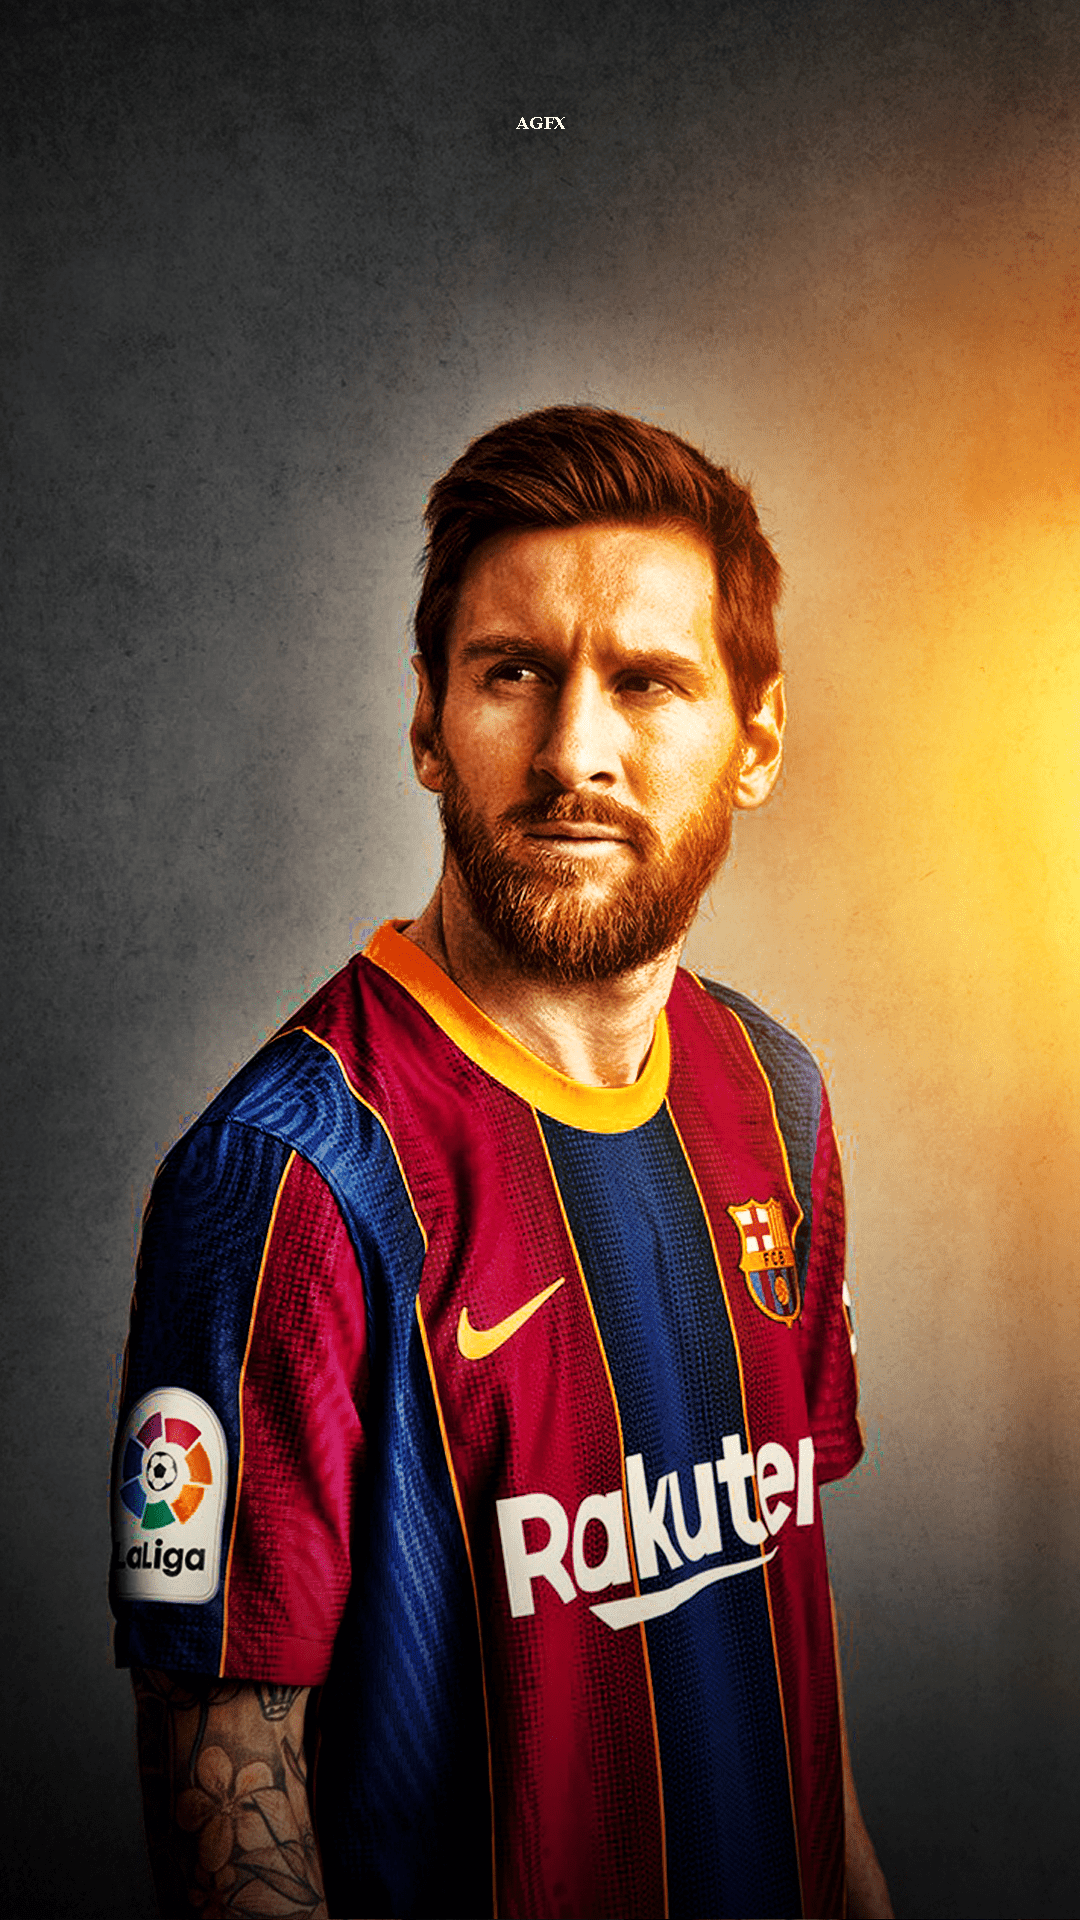 Với những hình nền chân dung của Messi, bạn sẽ nhận ra rằng ý nghĩa của một bức ảnh không chỉ là việc nó đẹp. Mà nó còn có thể truyền tải được những thông điệp về cuộc sống và giá trị của nó. Messi không chỉ là một cầu thủ bóng đá nổi tiếng, mà anh ta còn là một người rất giản dị và đáng kính trong cuộc sống.